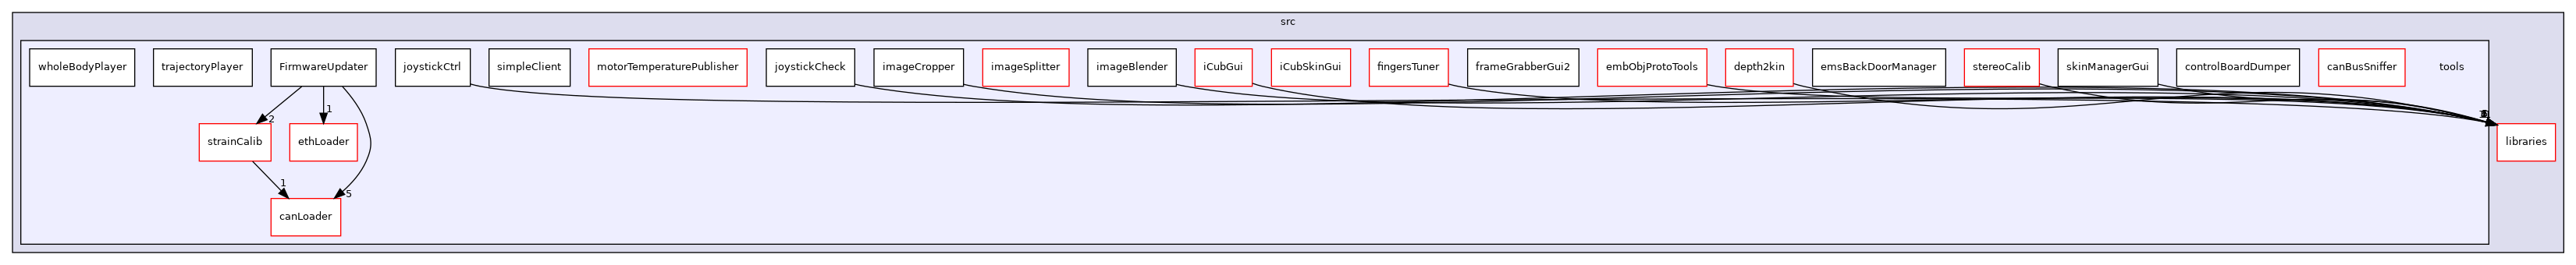 icub-main/src/tools